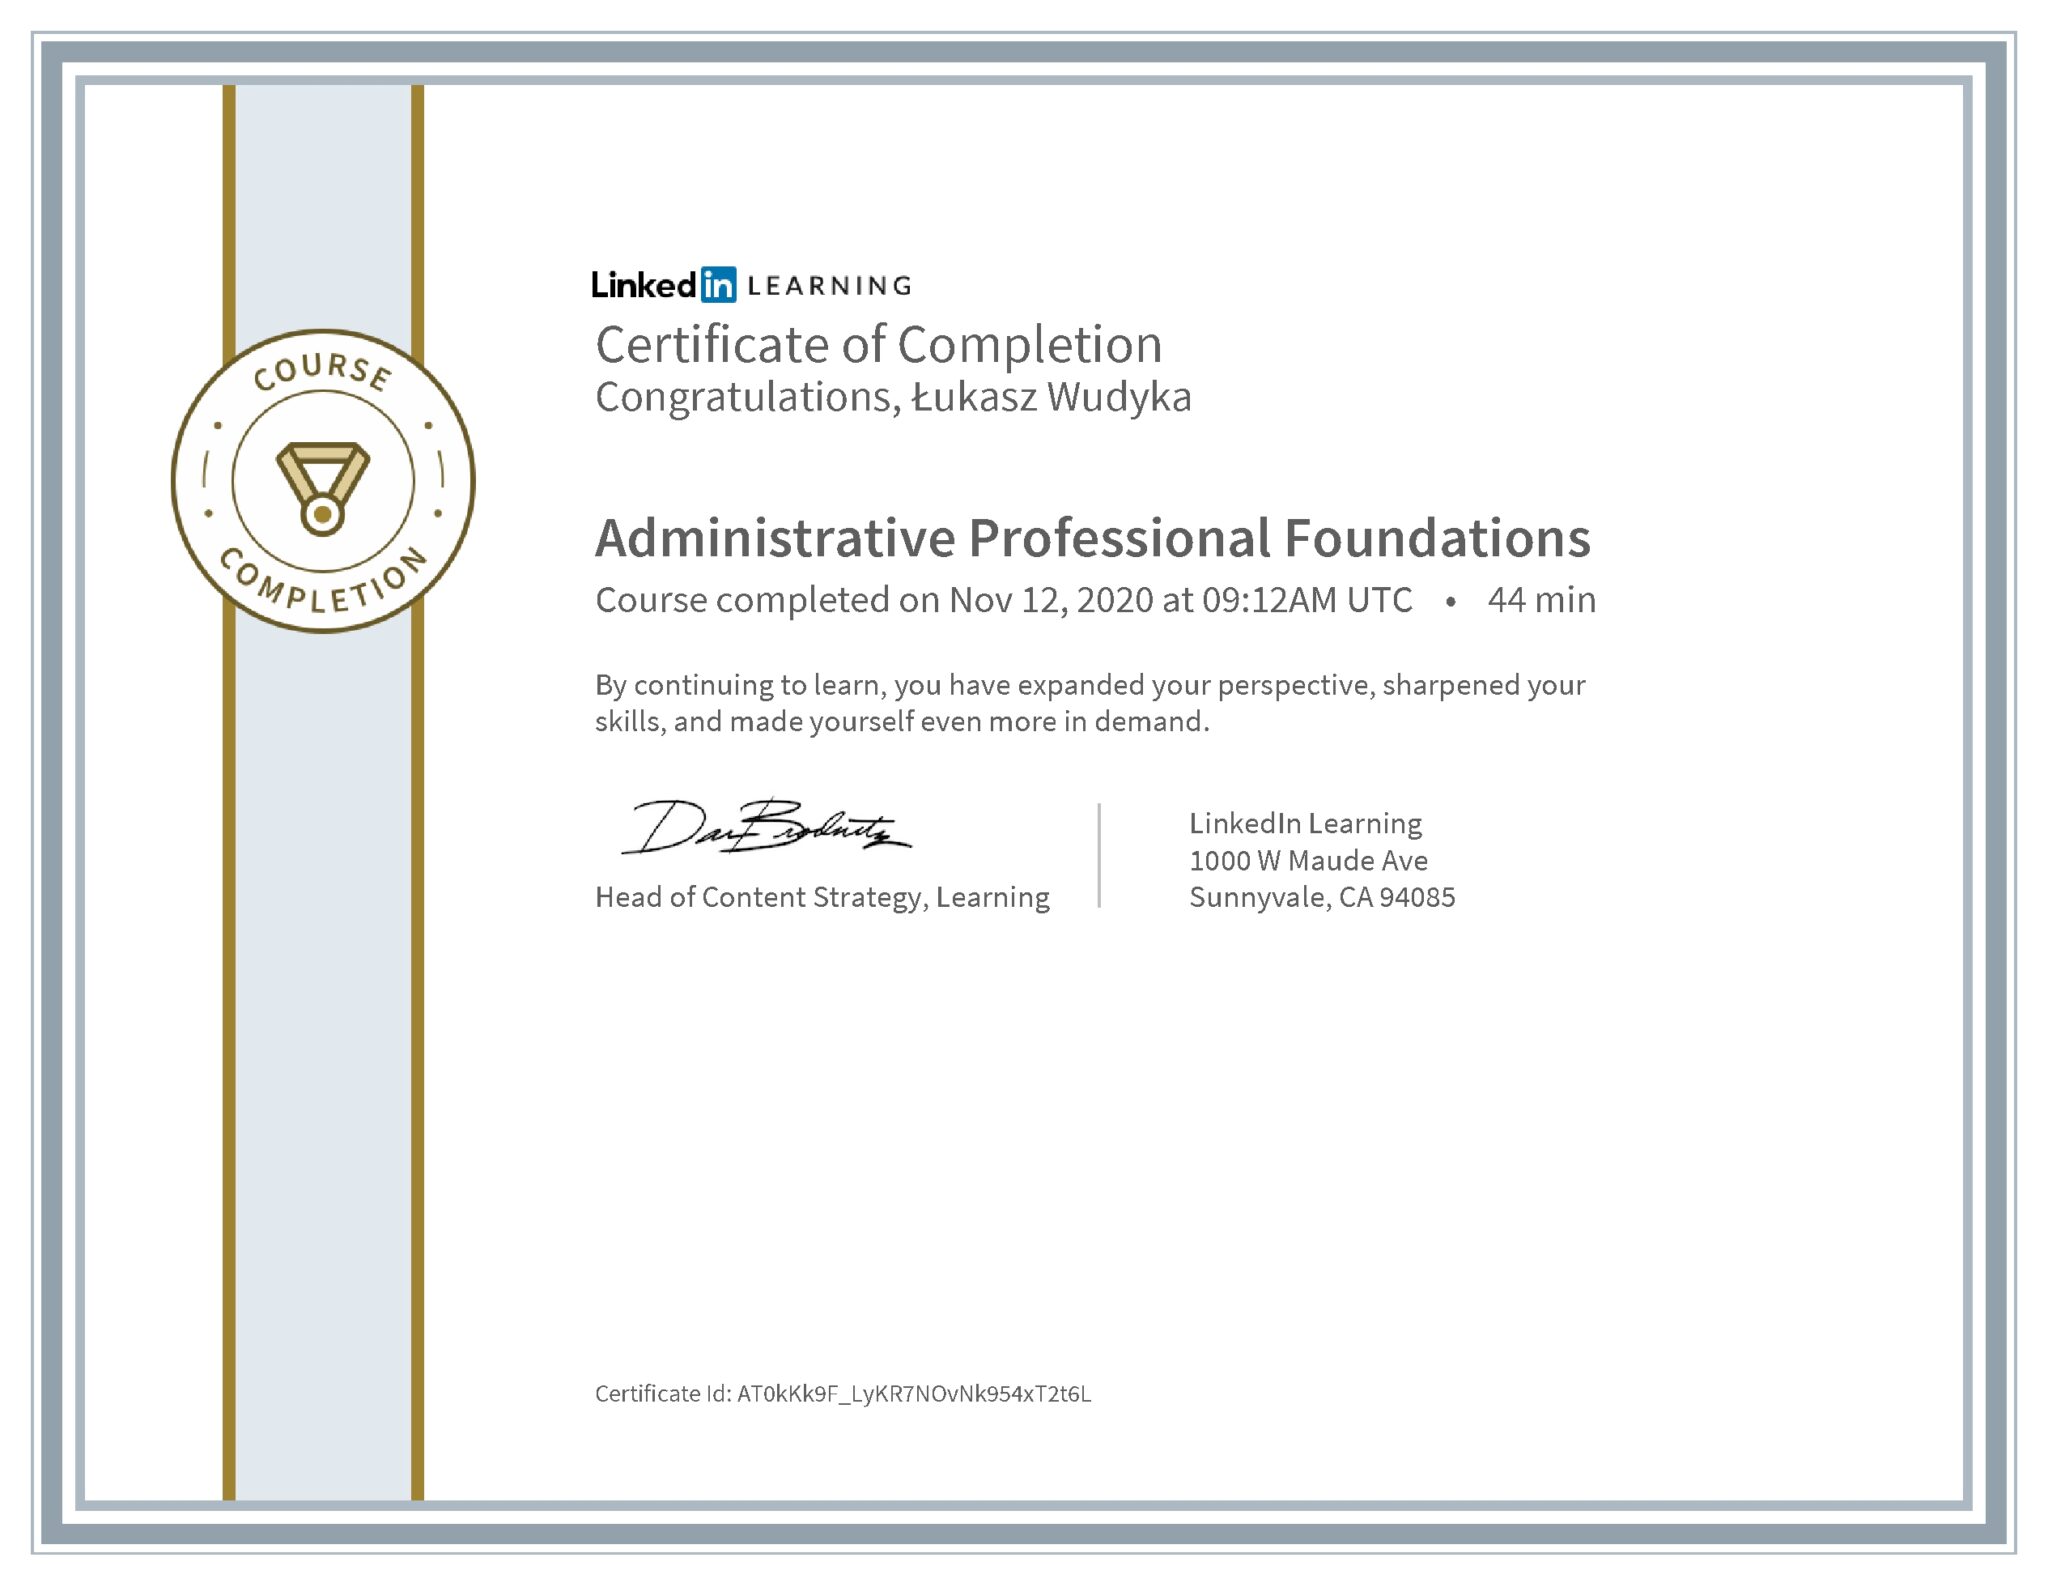 Łukasz Wudyka certyfikat LinkedIn Administrative Professional Foundations